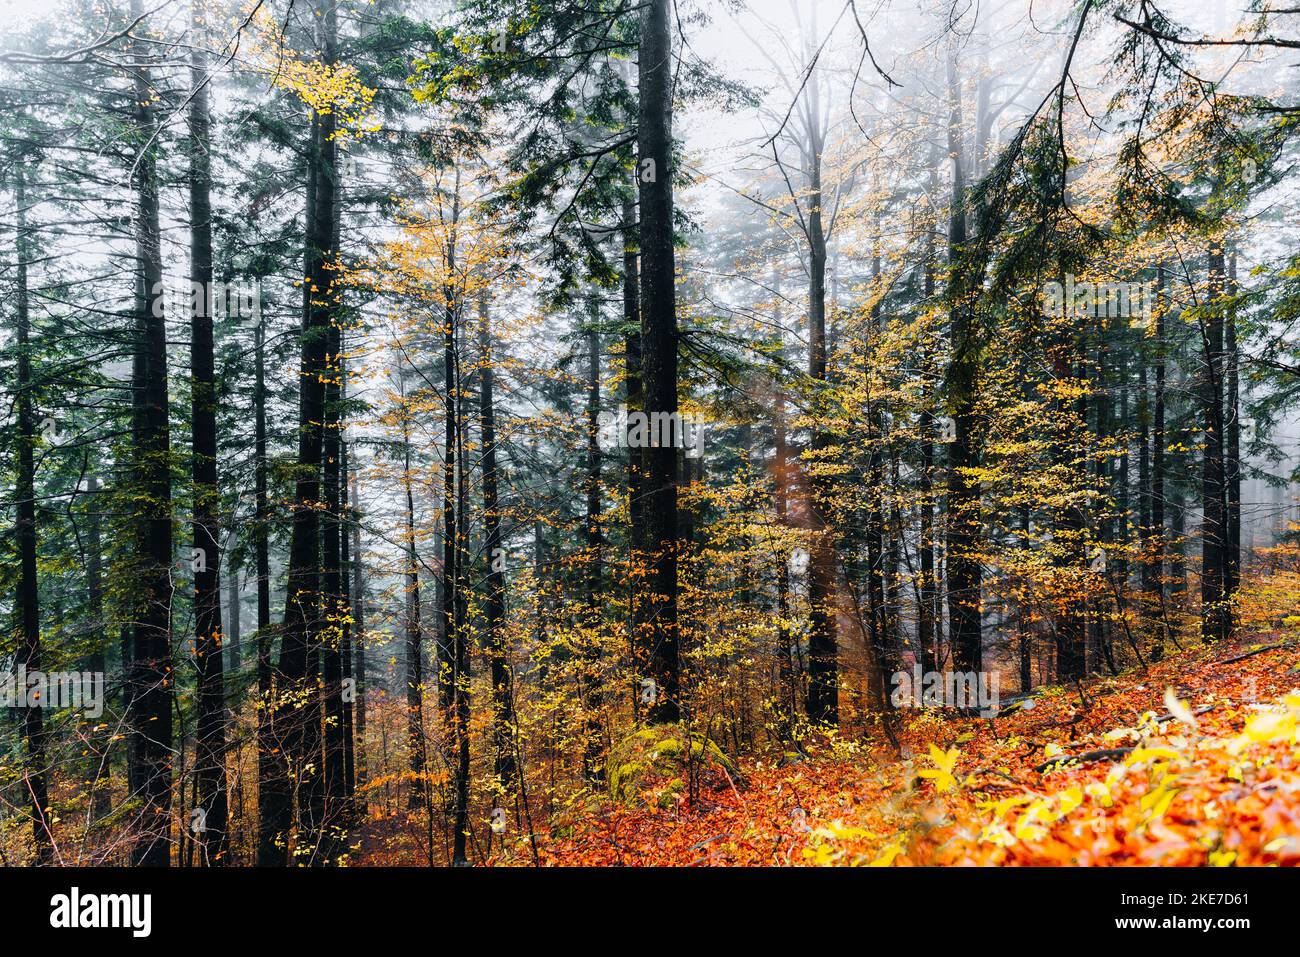 Foreste Casentinesi, Italien. Wald im Herbst, geheimnisvolle Stimmung. Stockfoto